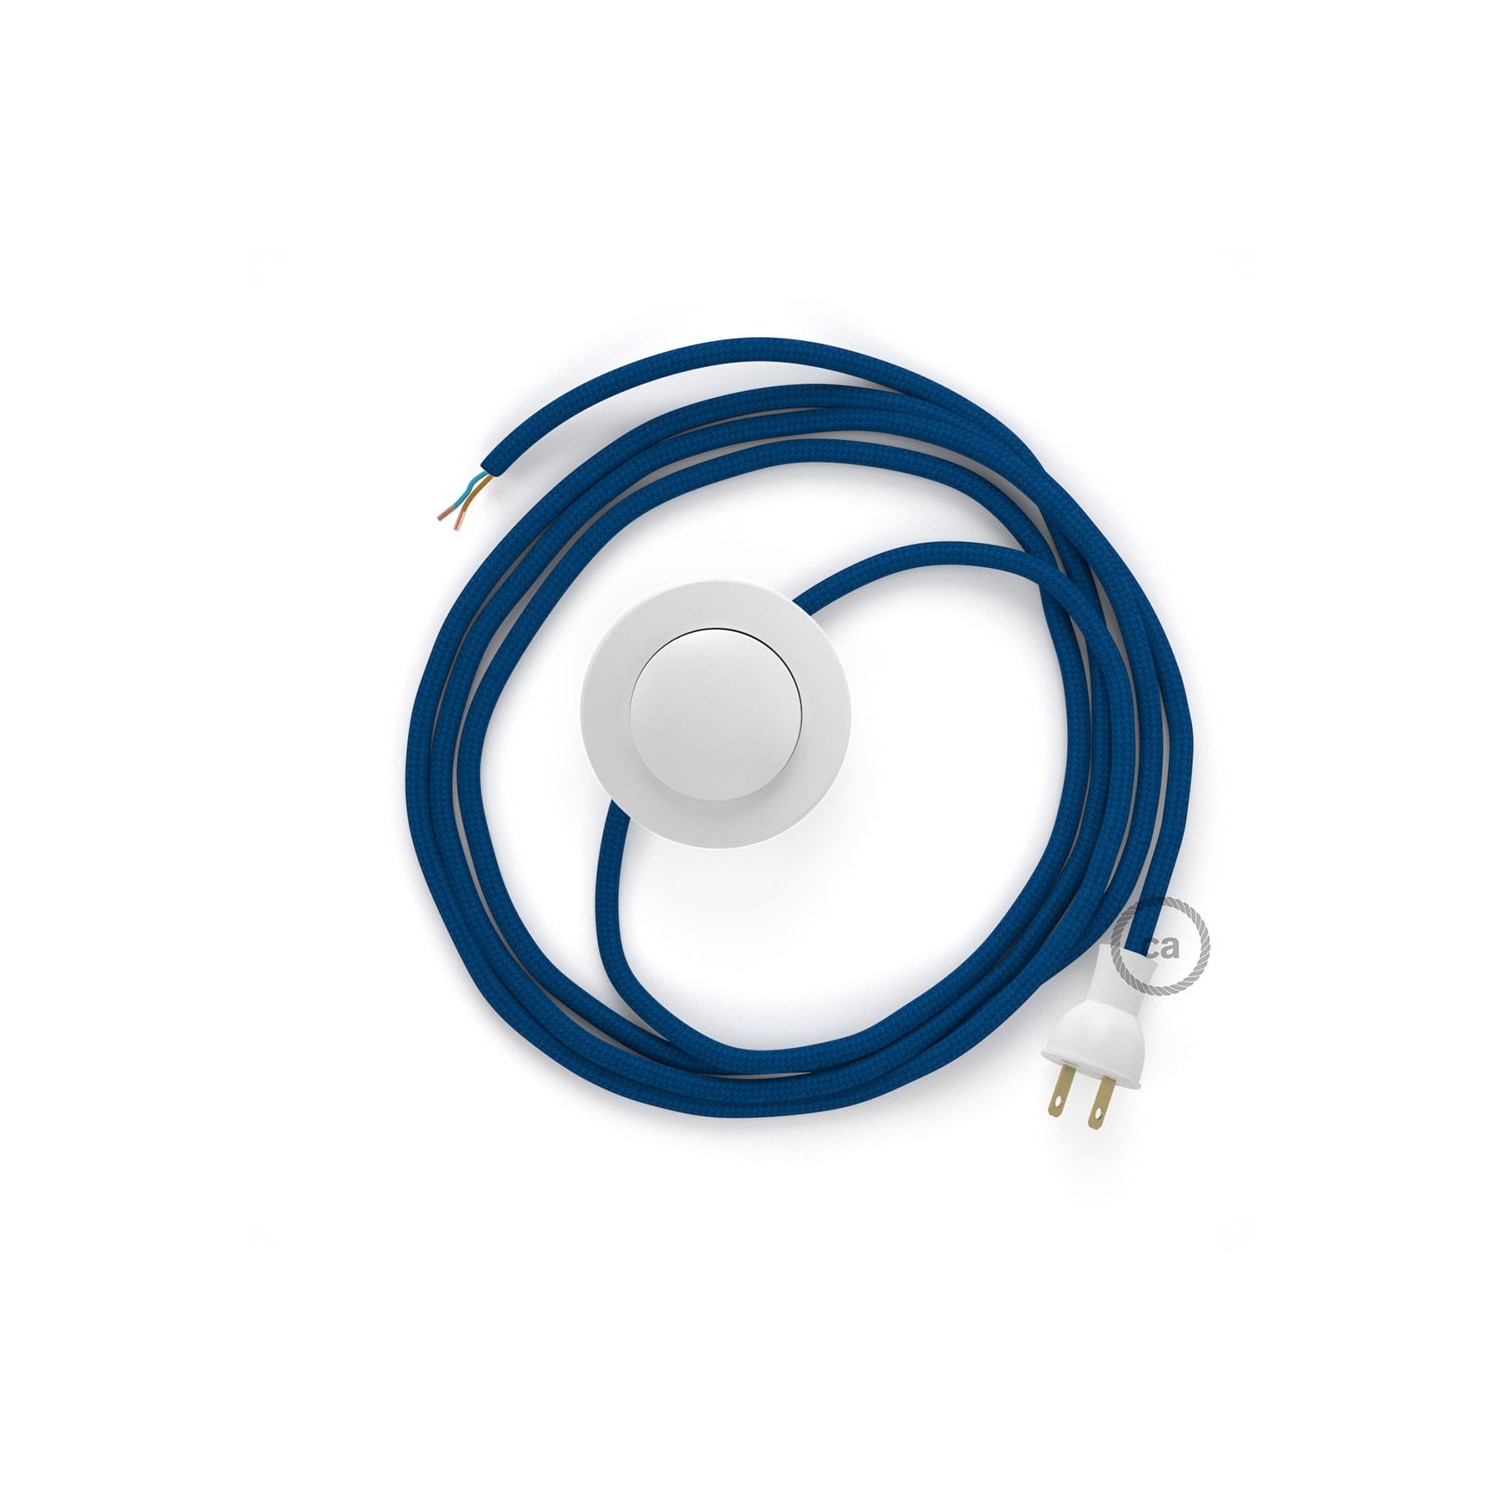 Cableado para lámpara de piso, cable RM12 Rayón Azul 3 m. Elige tu el color de la clavija y del interruptor!